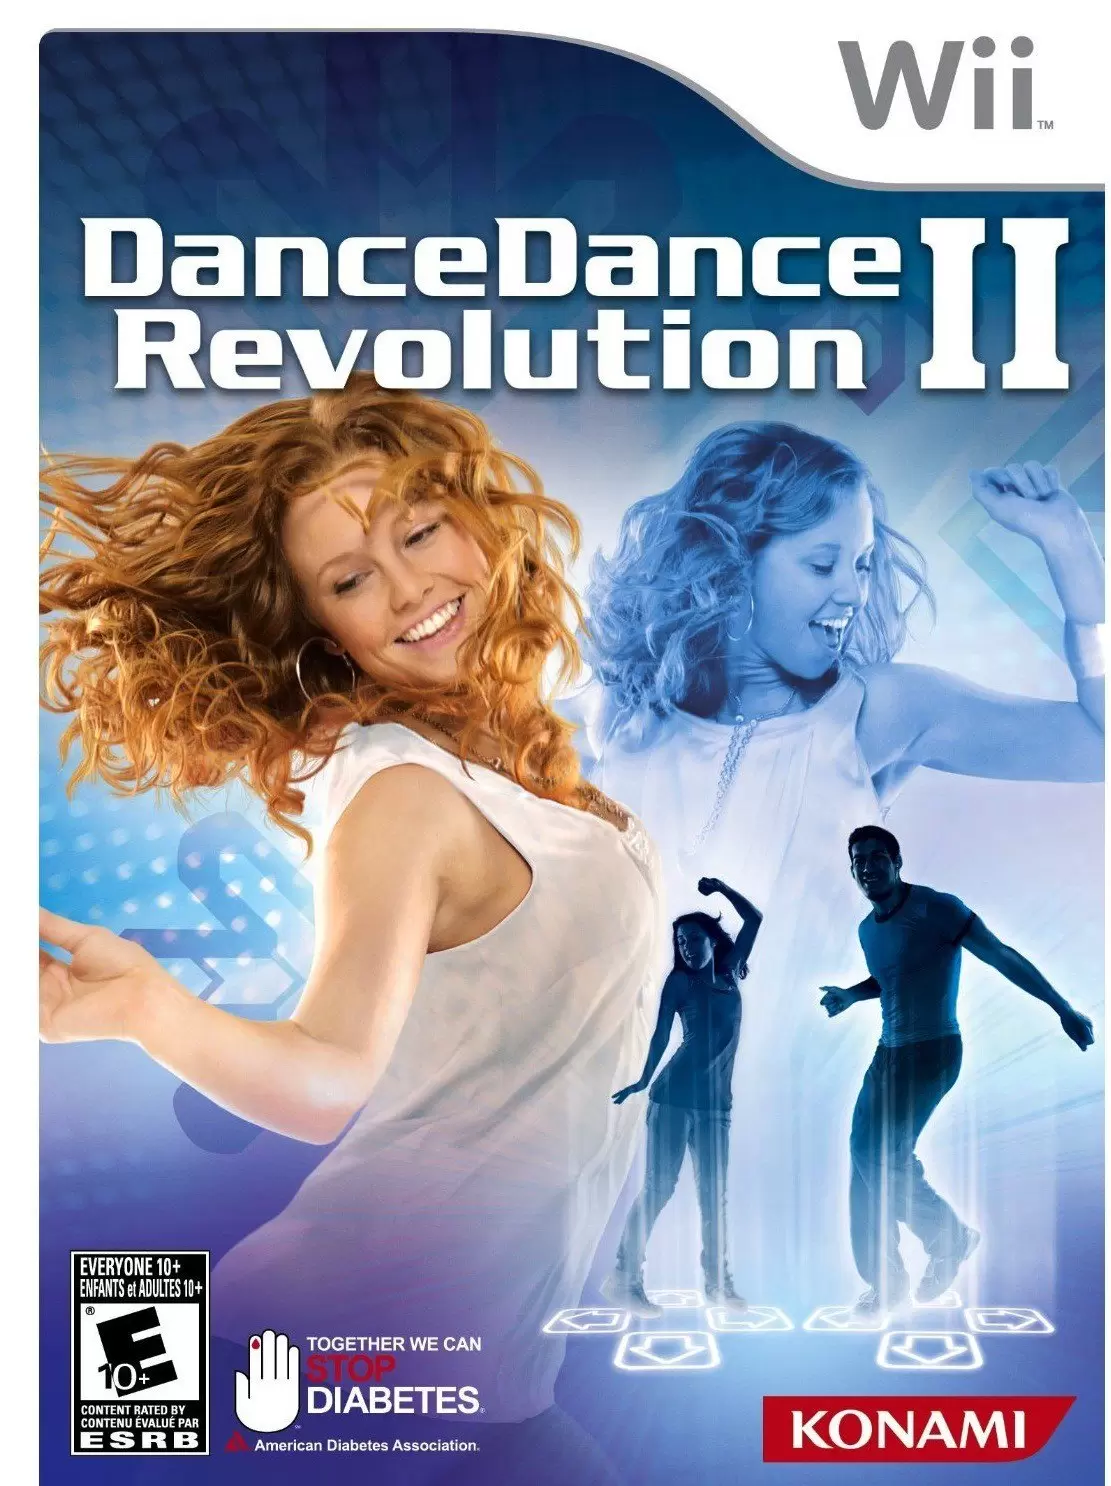 Nintendo Wii Games - Dance Dance Revolution II